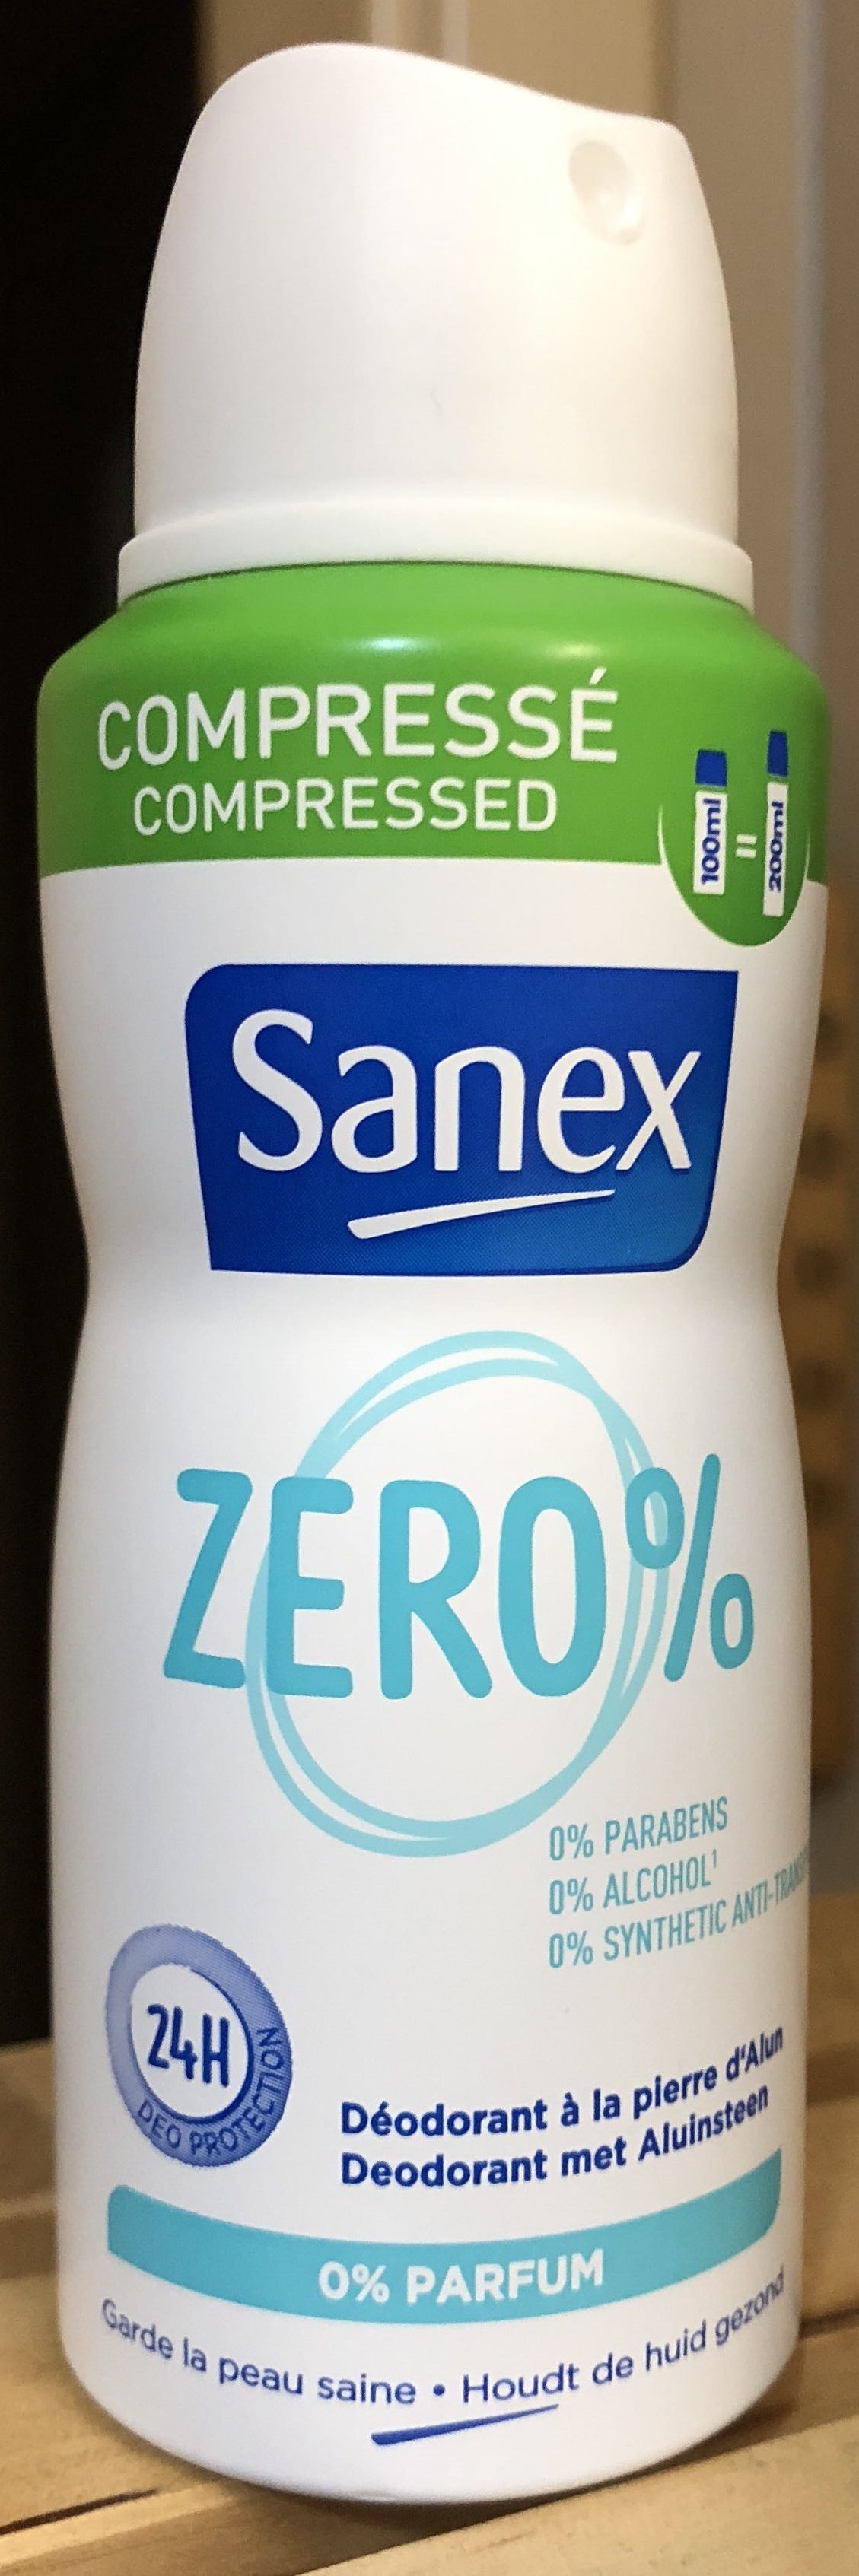 Sanex zero% - Produit - fr